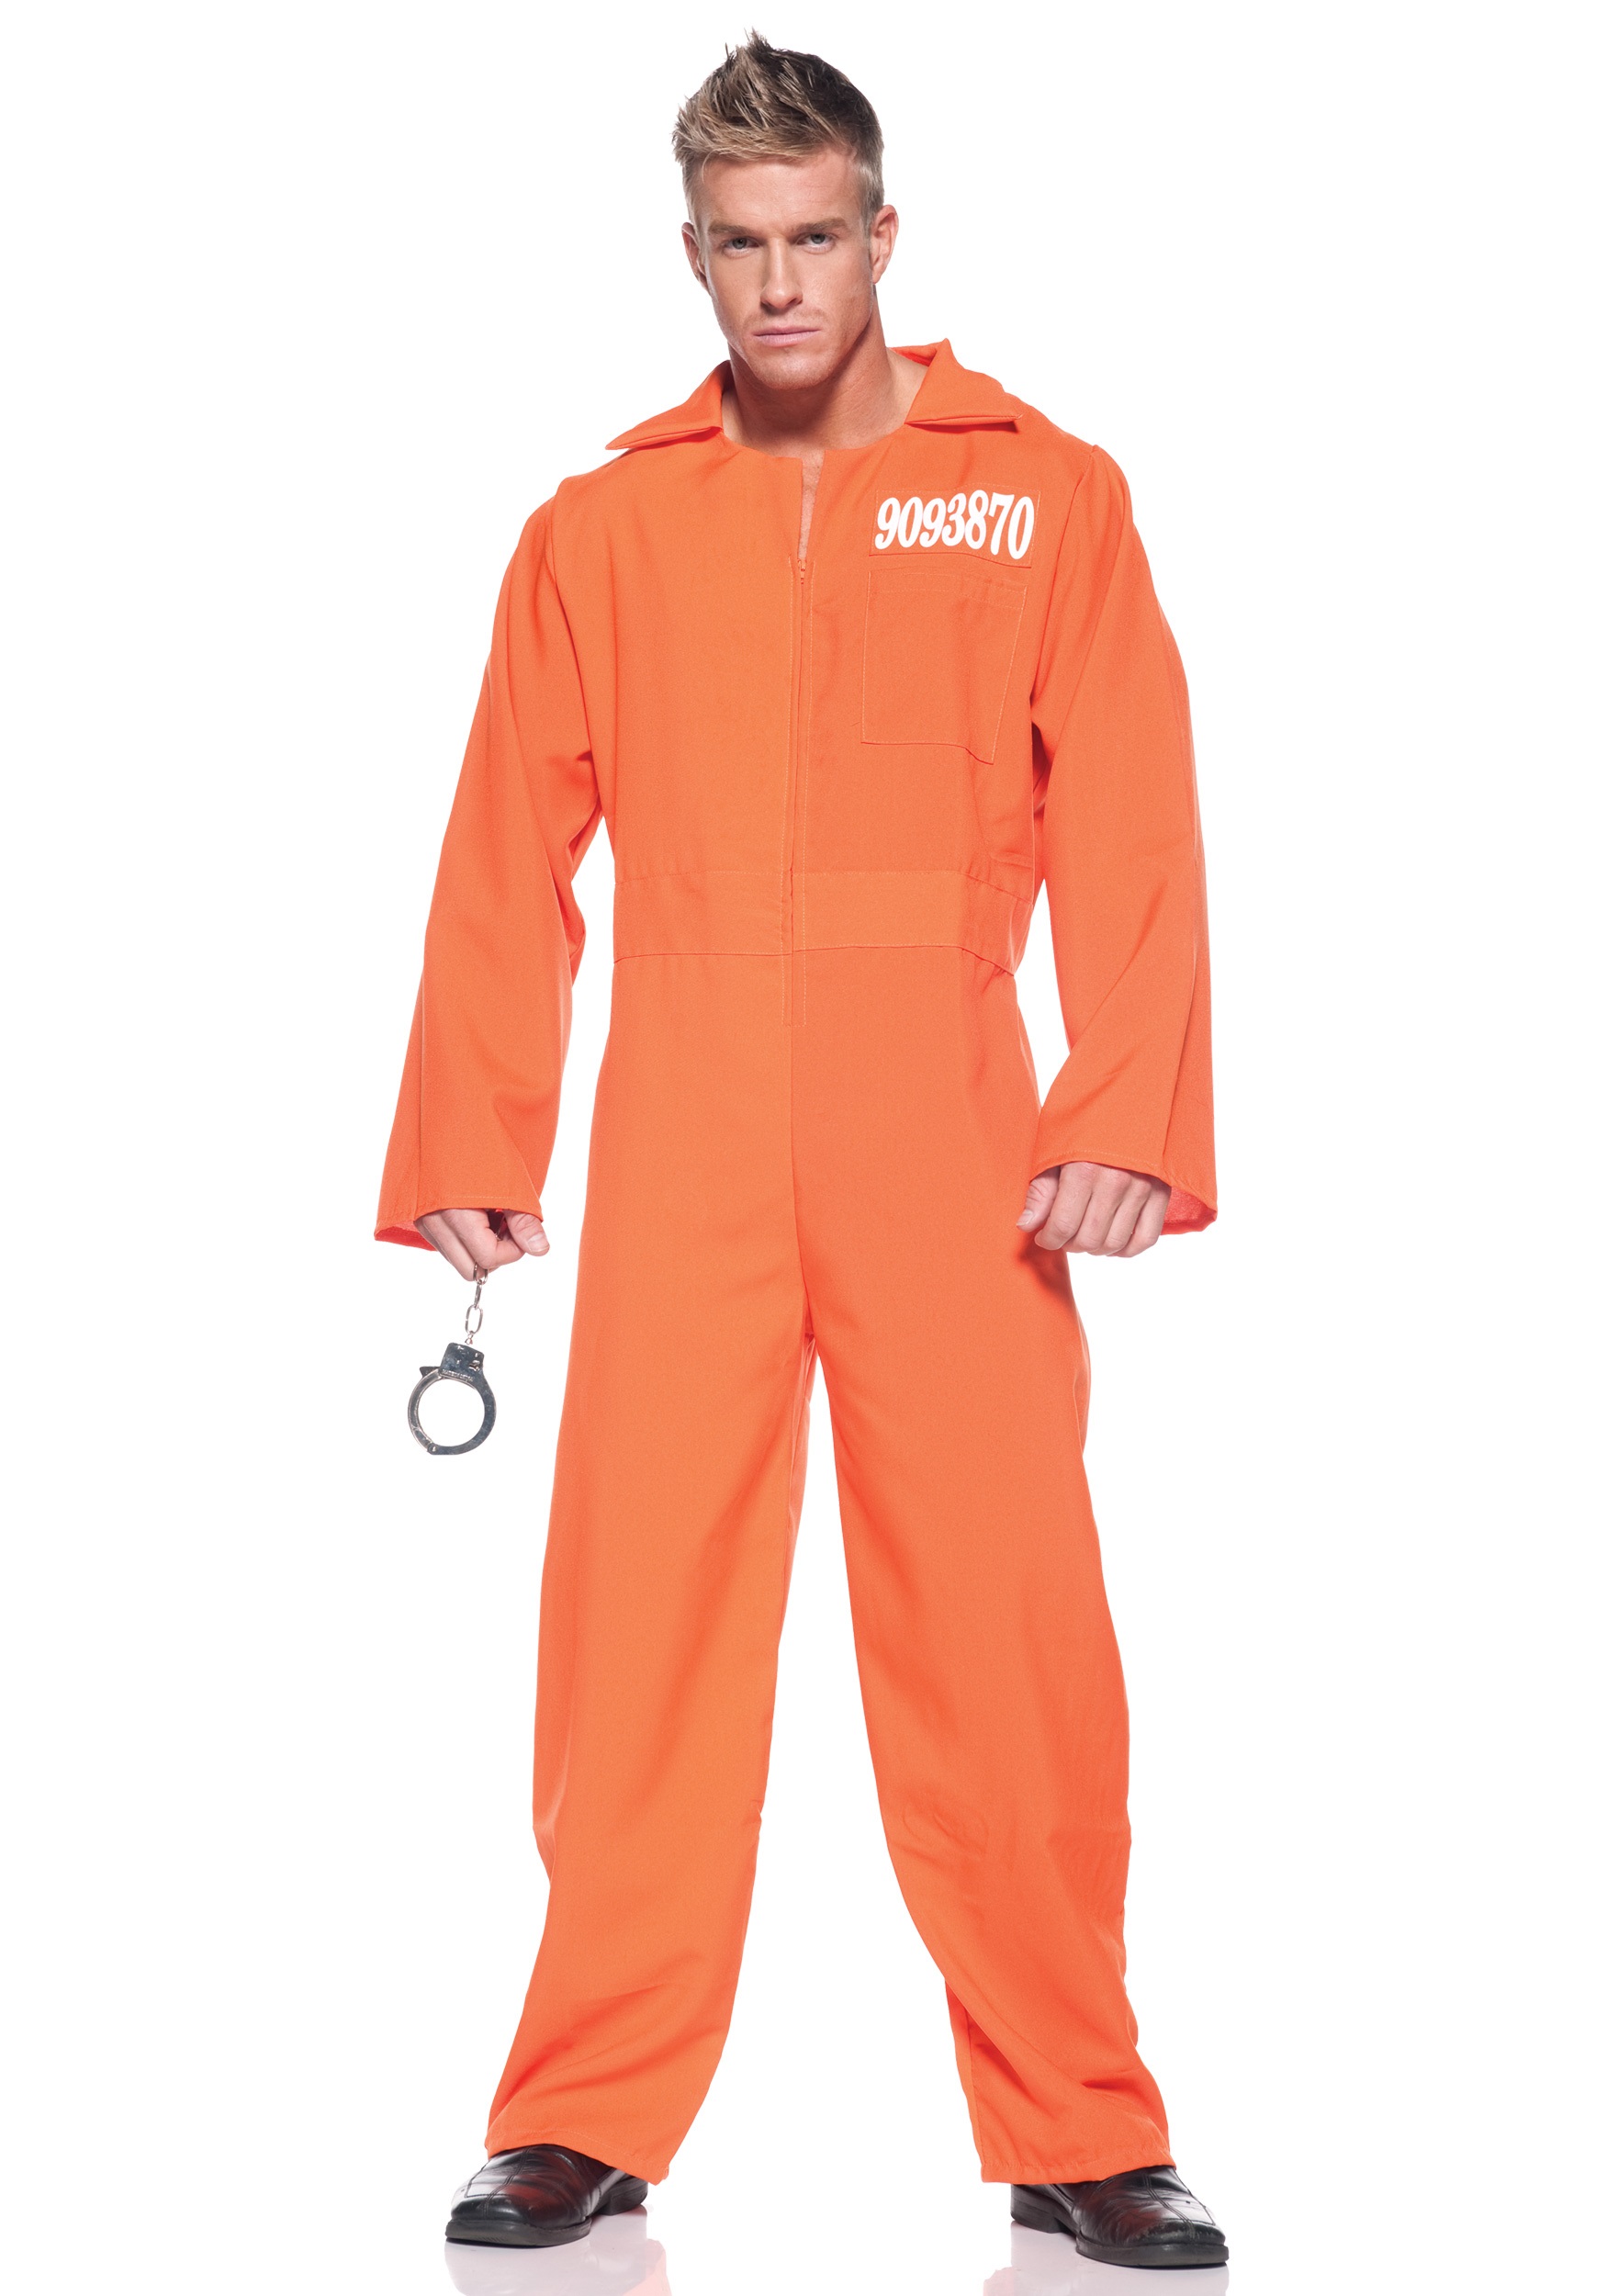 Plus Size Prison Jumpsuit Fancy Dress Costume For Adults